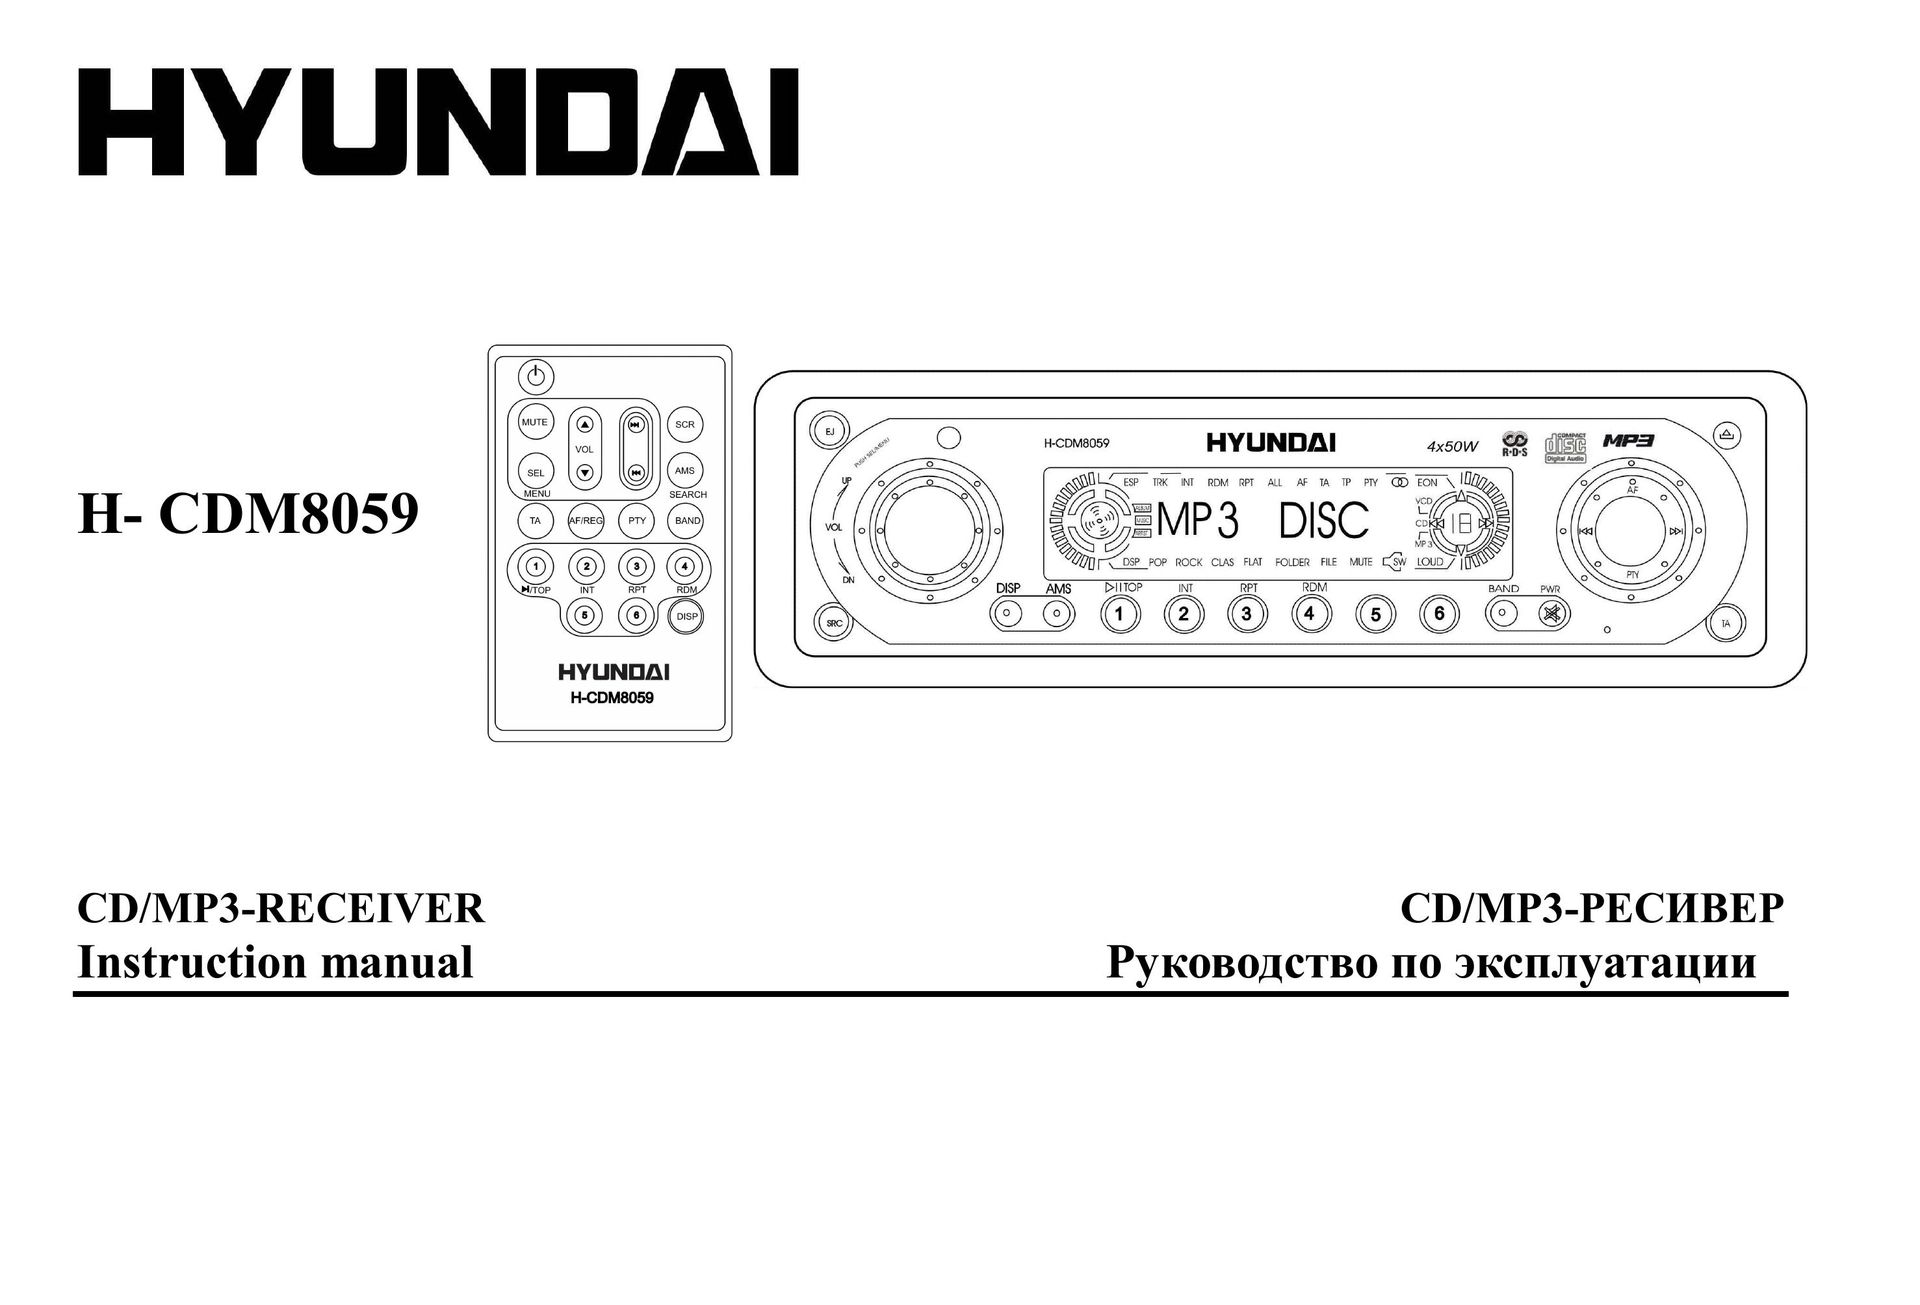 Hyundai H- CDM8059 Car Stereo System User Manual